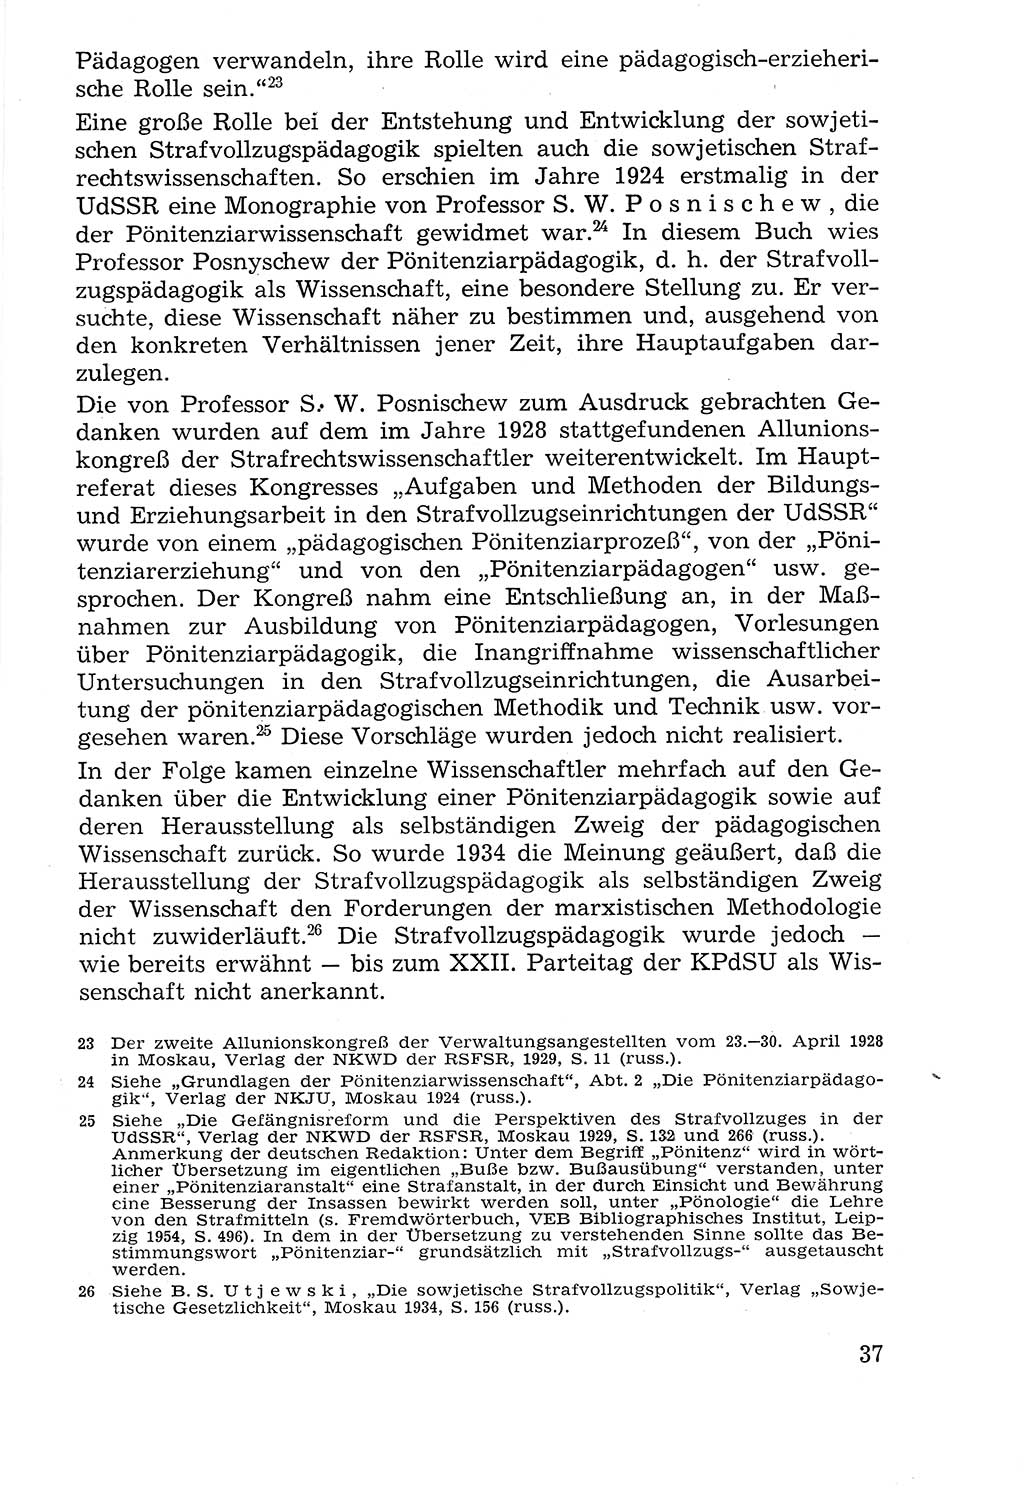 Lehrbuch der Strafvollzugspädagogik [Deutsche Demokratische Republik (DDR)] 1969, Seite 37 (Lb. SV-Pd. DDR 1969, S. 37)